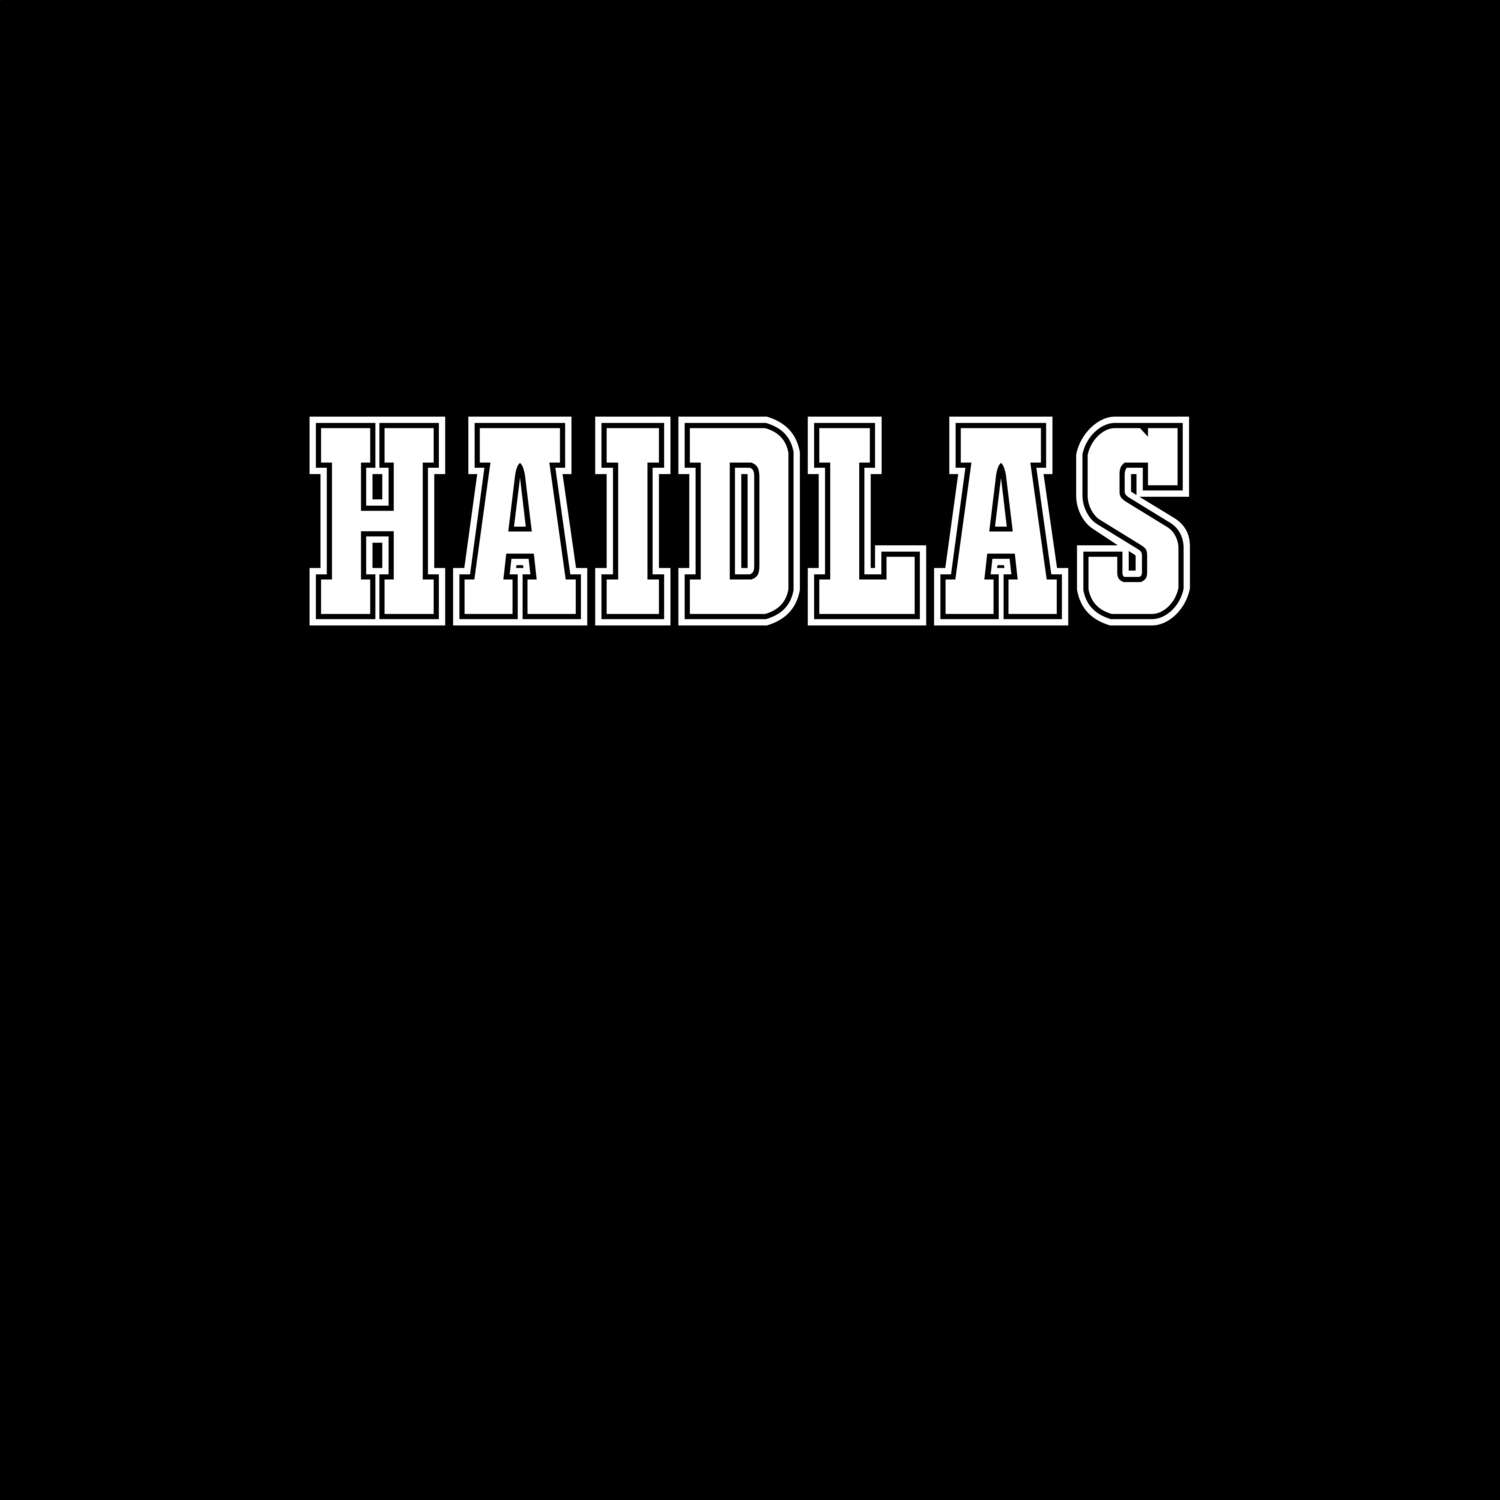 Haidlas T-Shirt »Classic«